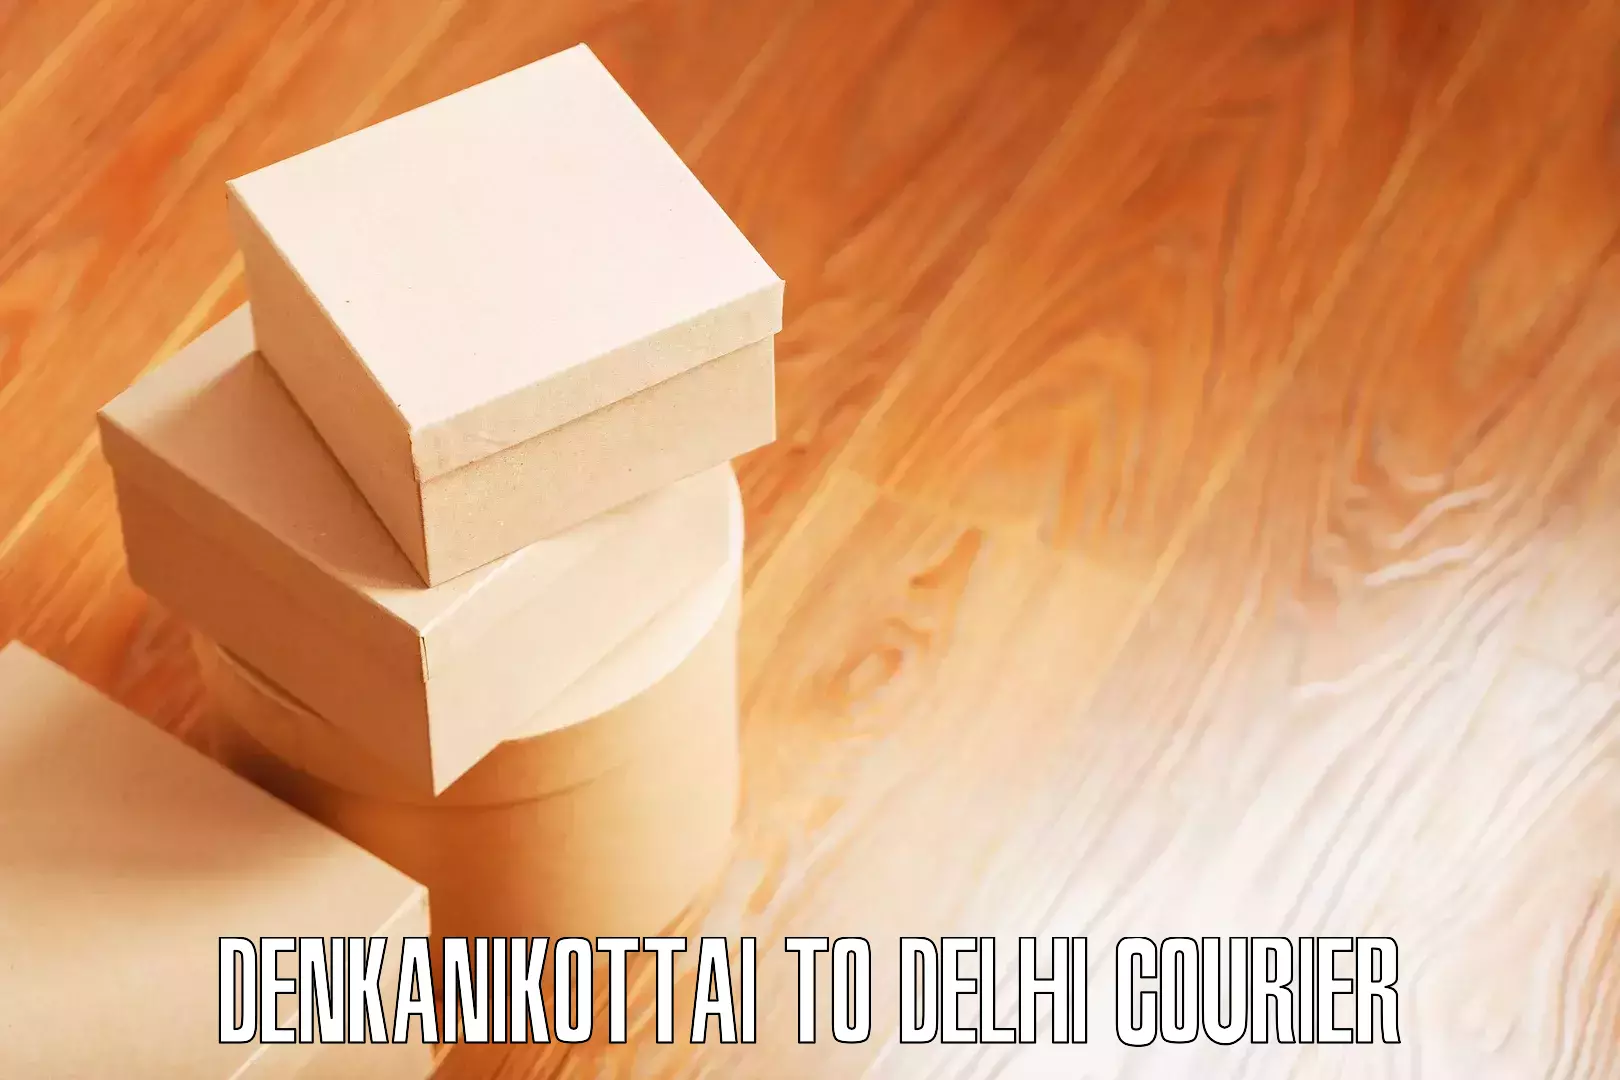 Customized relocation services Denkanikottai to Jamia Millia Islamia New Delhi